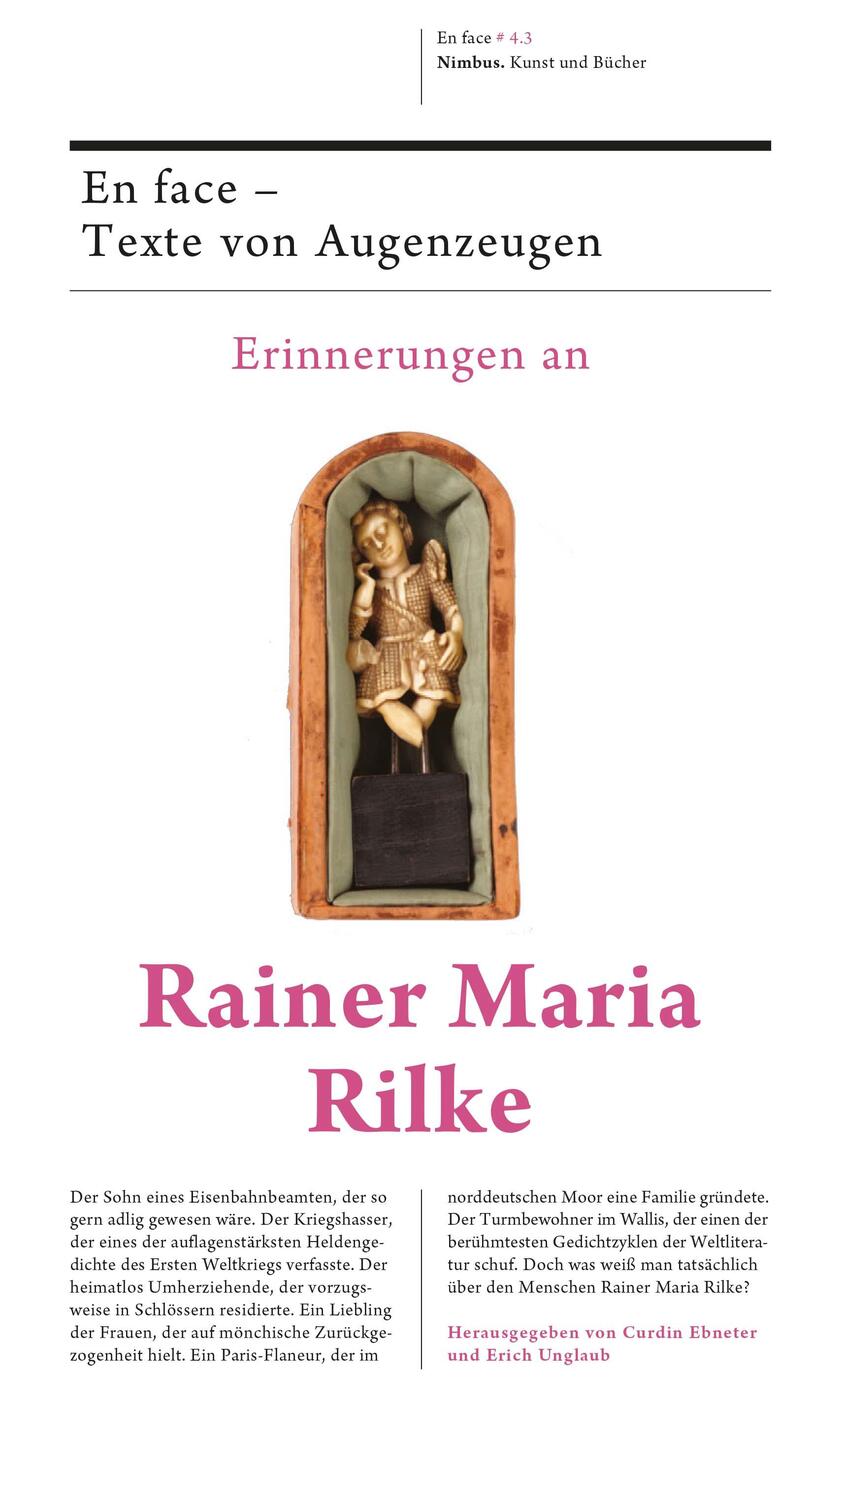 Bild: 9783907142875 | Erinnerungen an Rainer Maria Rilke | En face - Texte von Augenzeugen